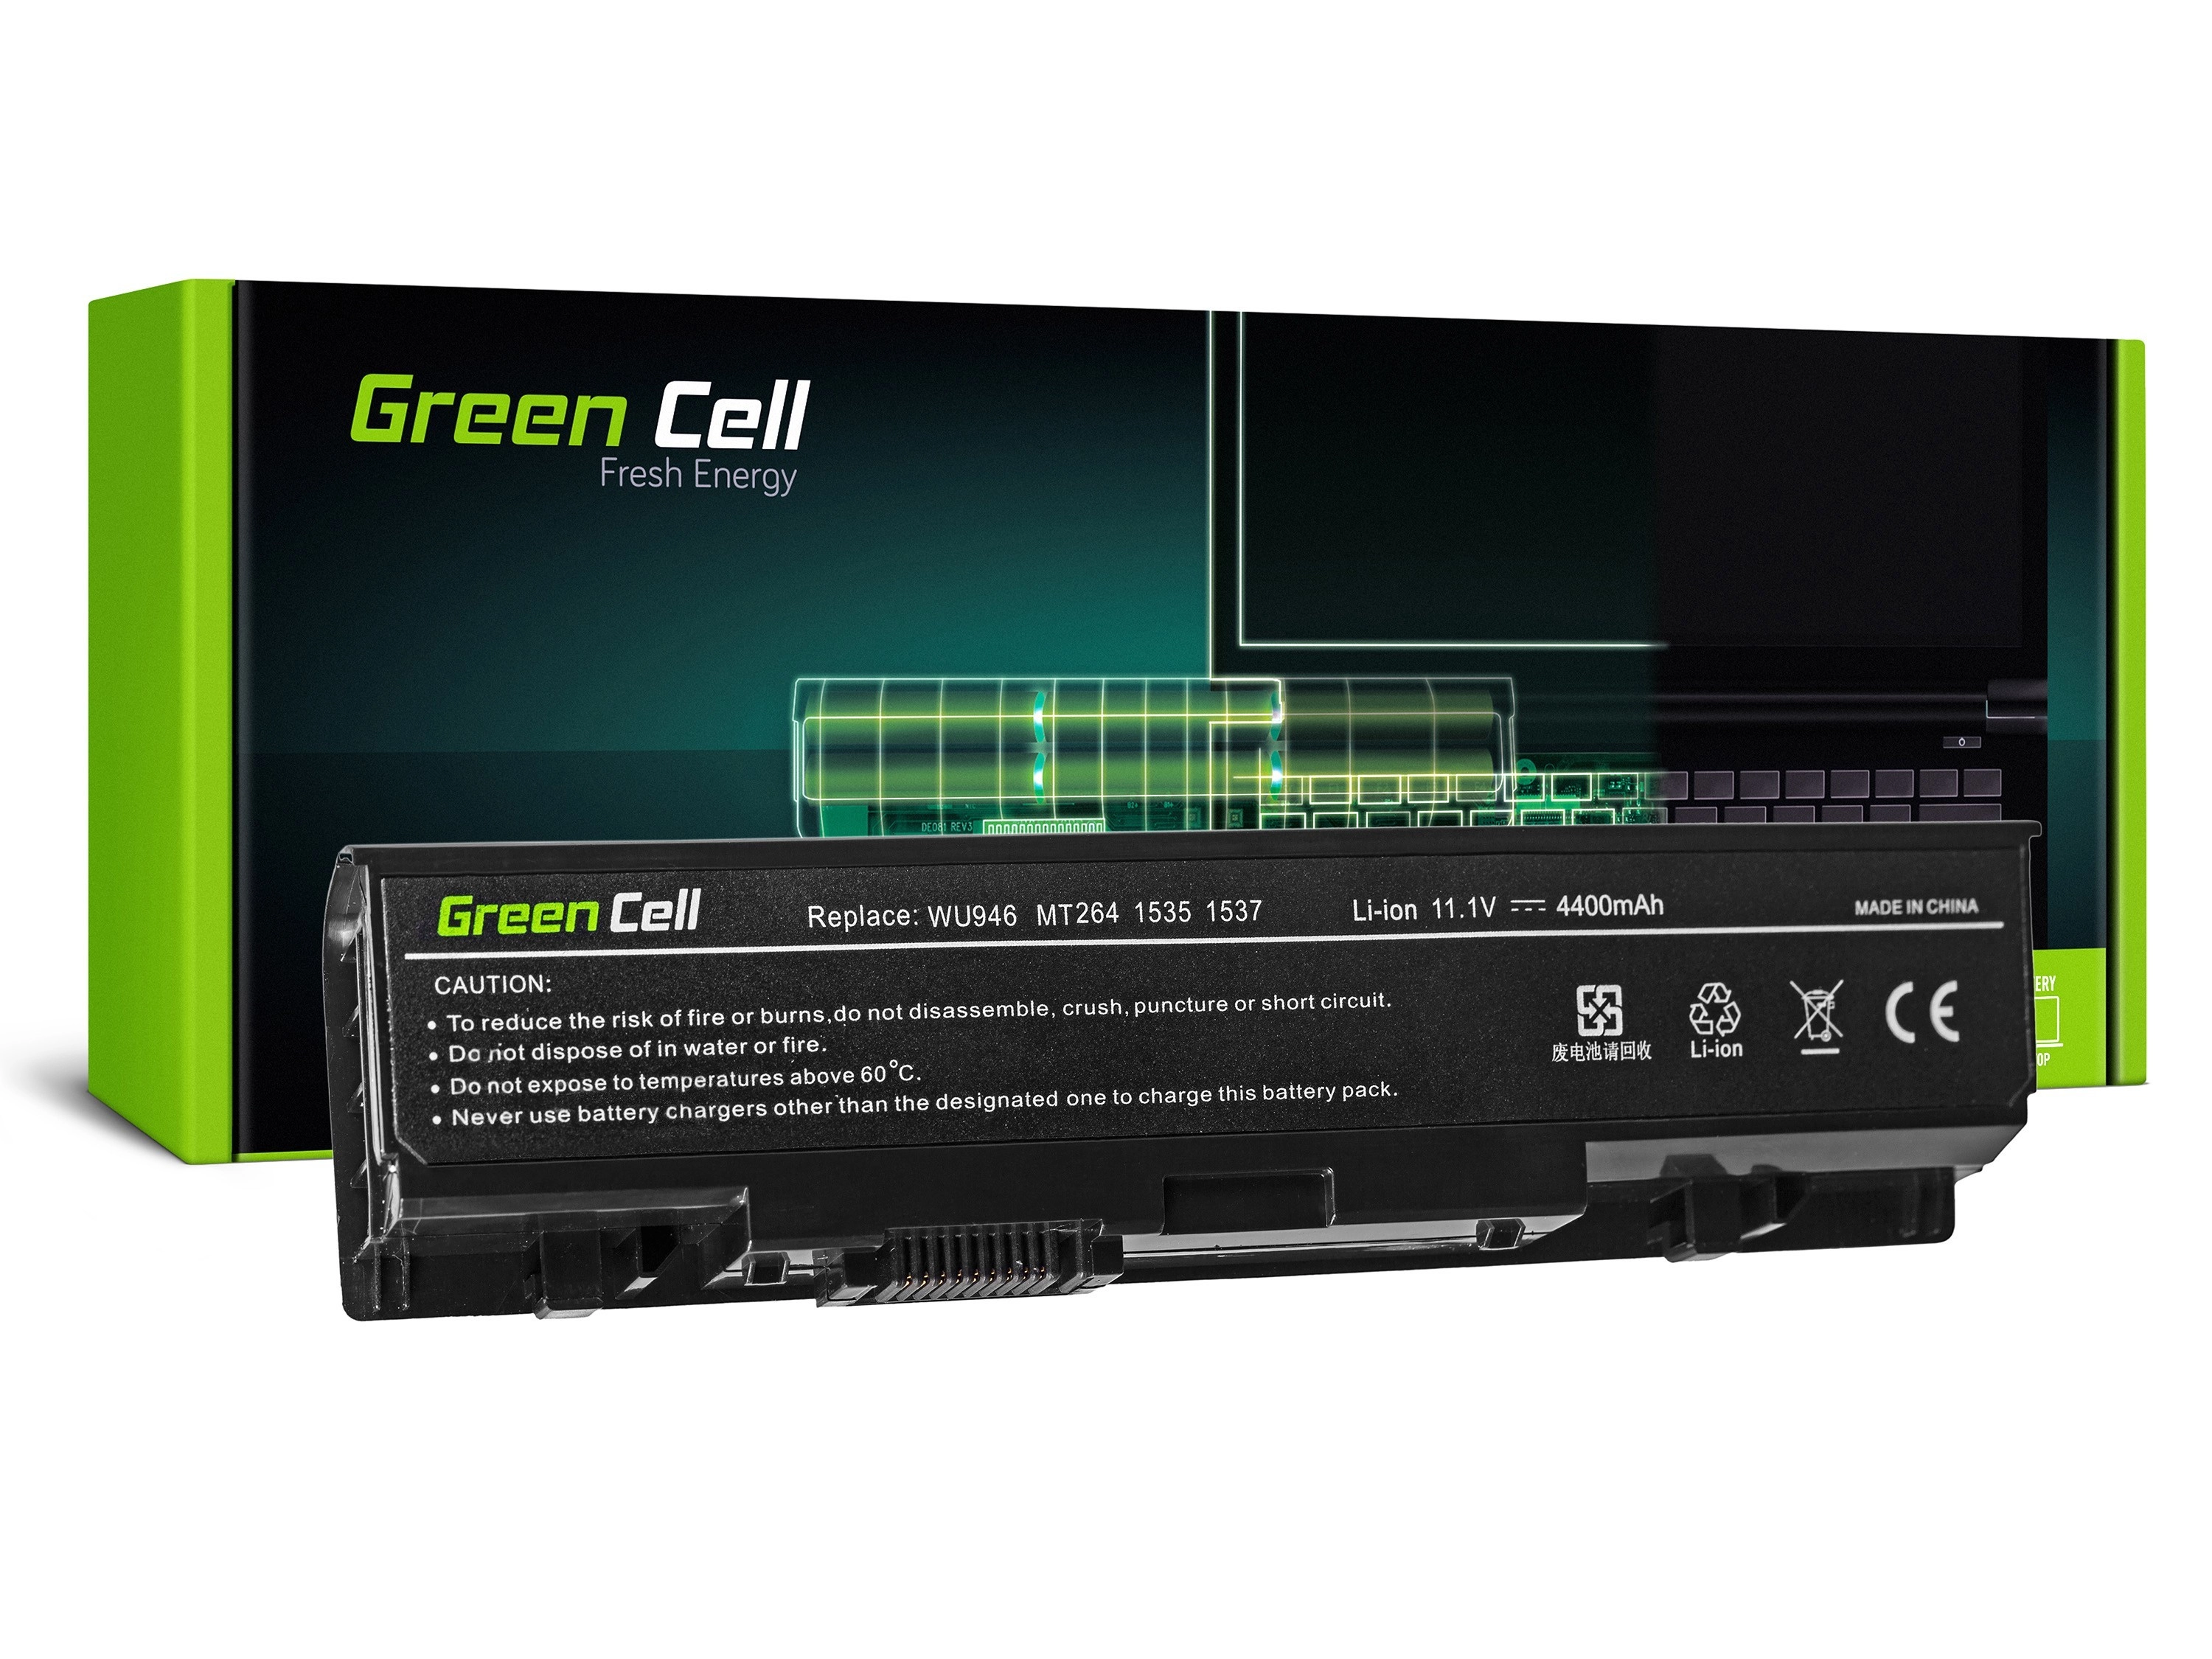 Green Cell Laptop akkumulátor Dell Studio 15 1535 1536 1537 1550 1555 1558